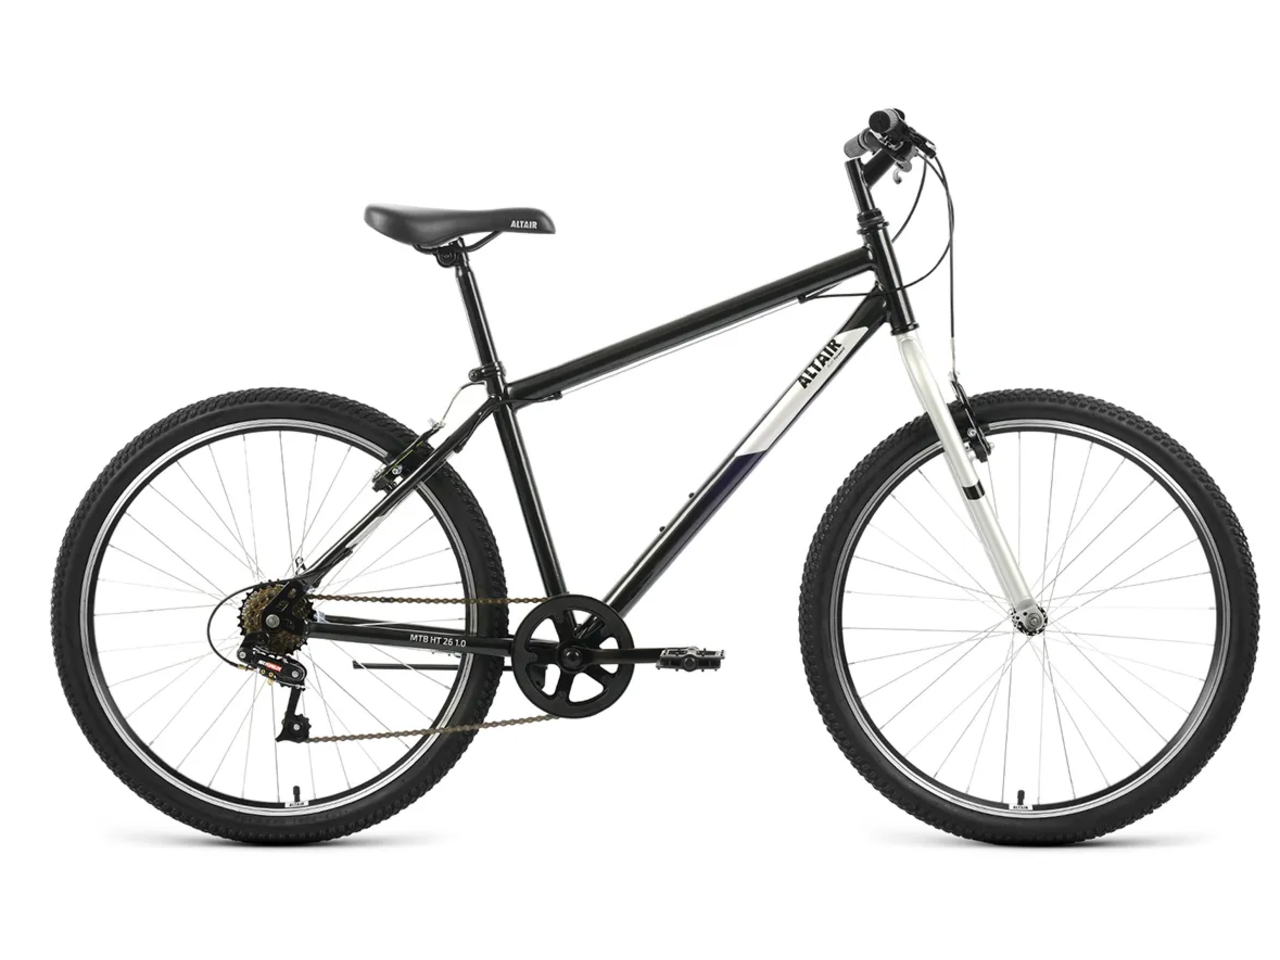 Велосипед ALTAIR MTB HT 26 1.0 р.19 2022 (черный/серый)